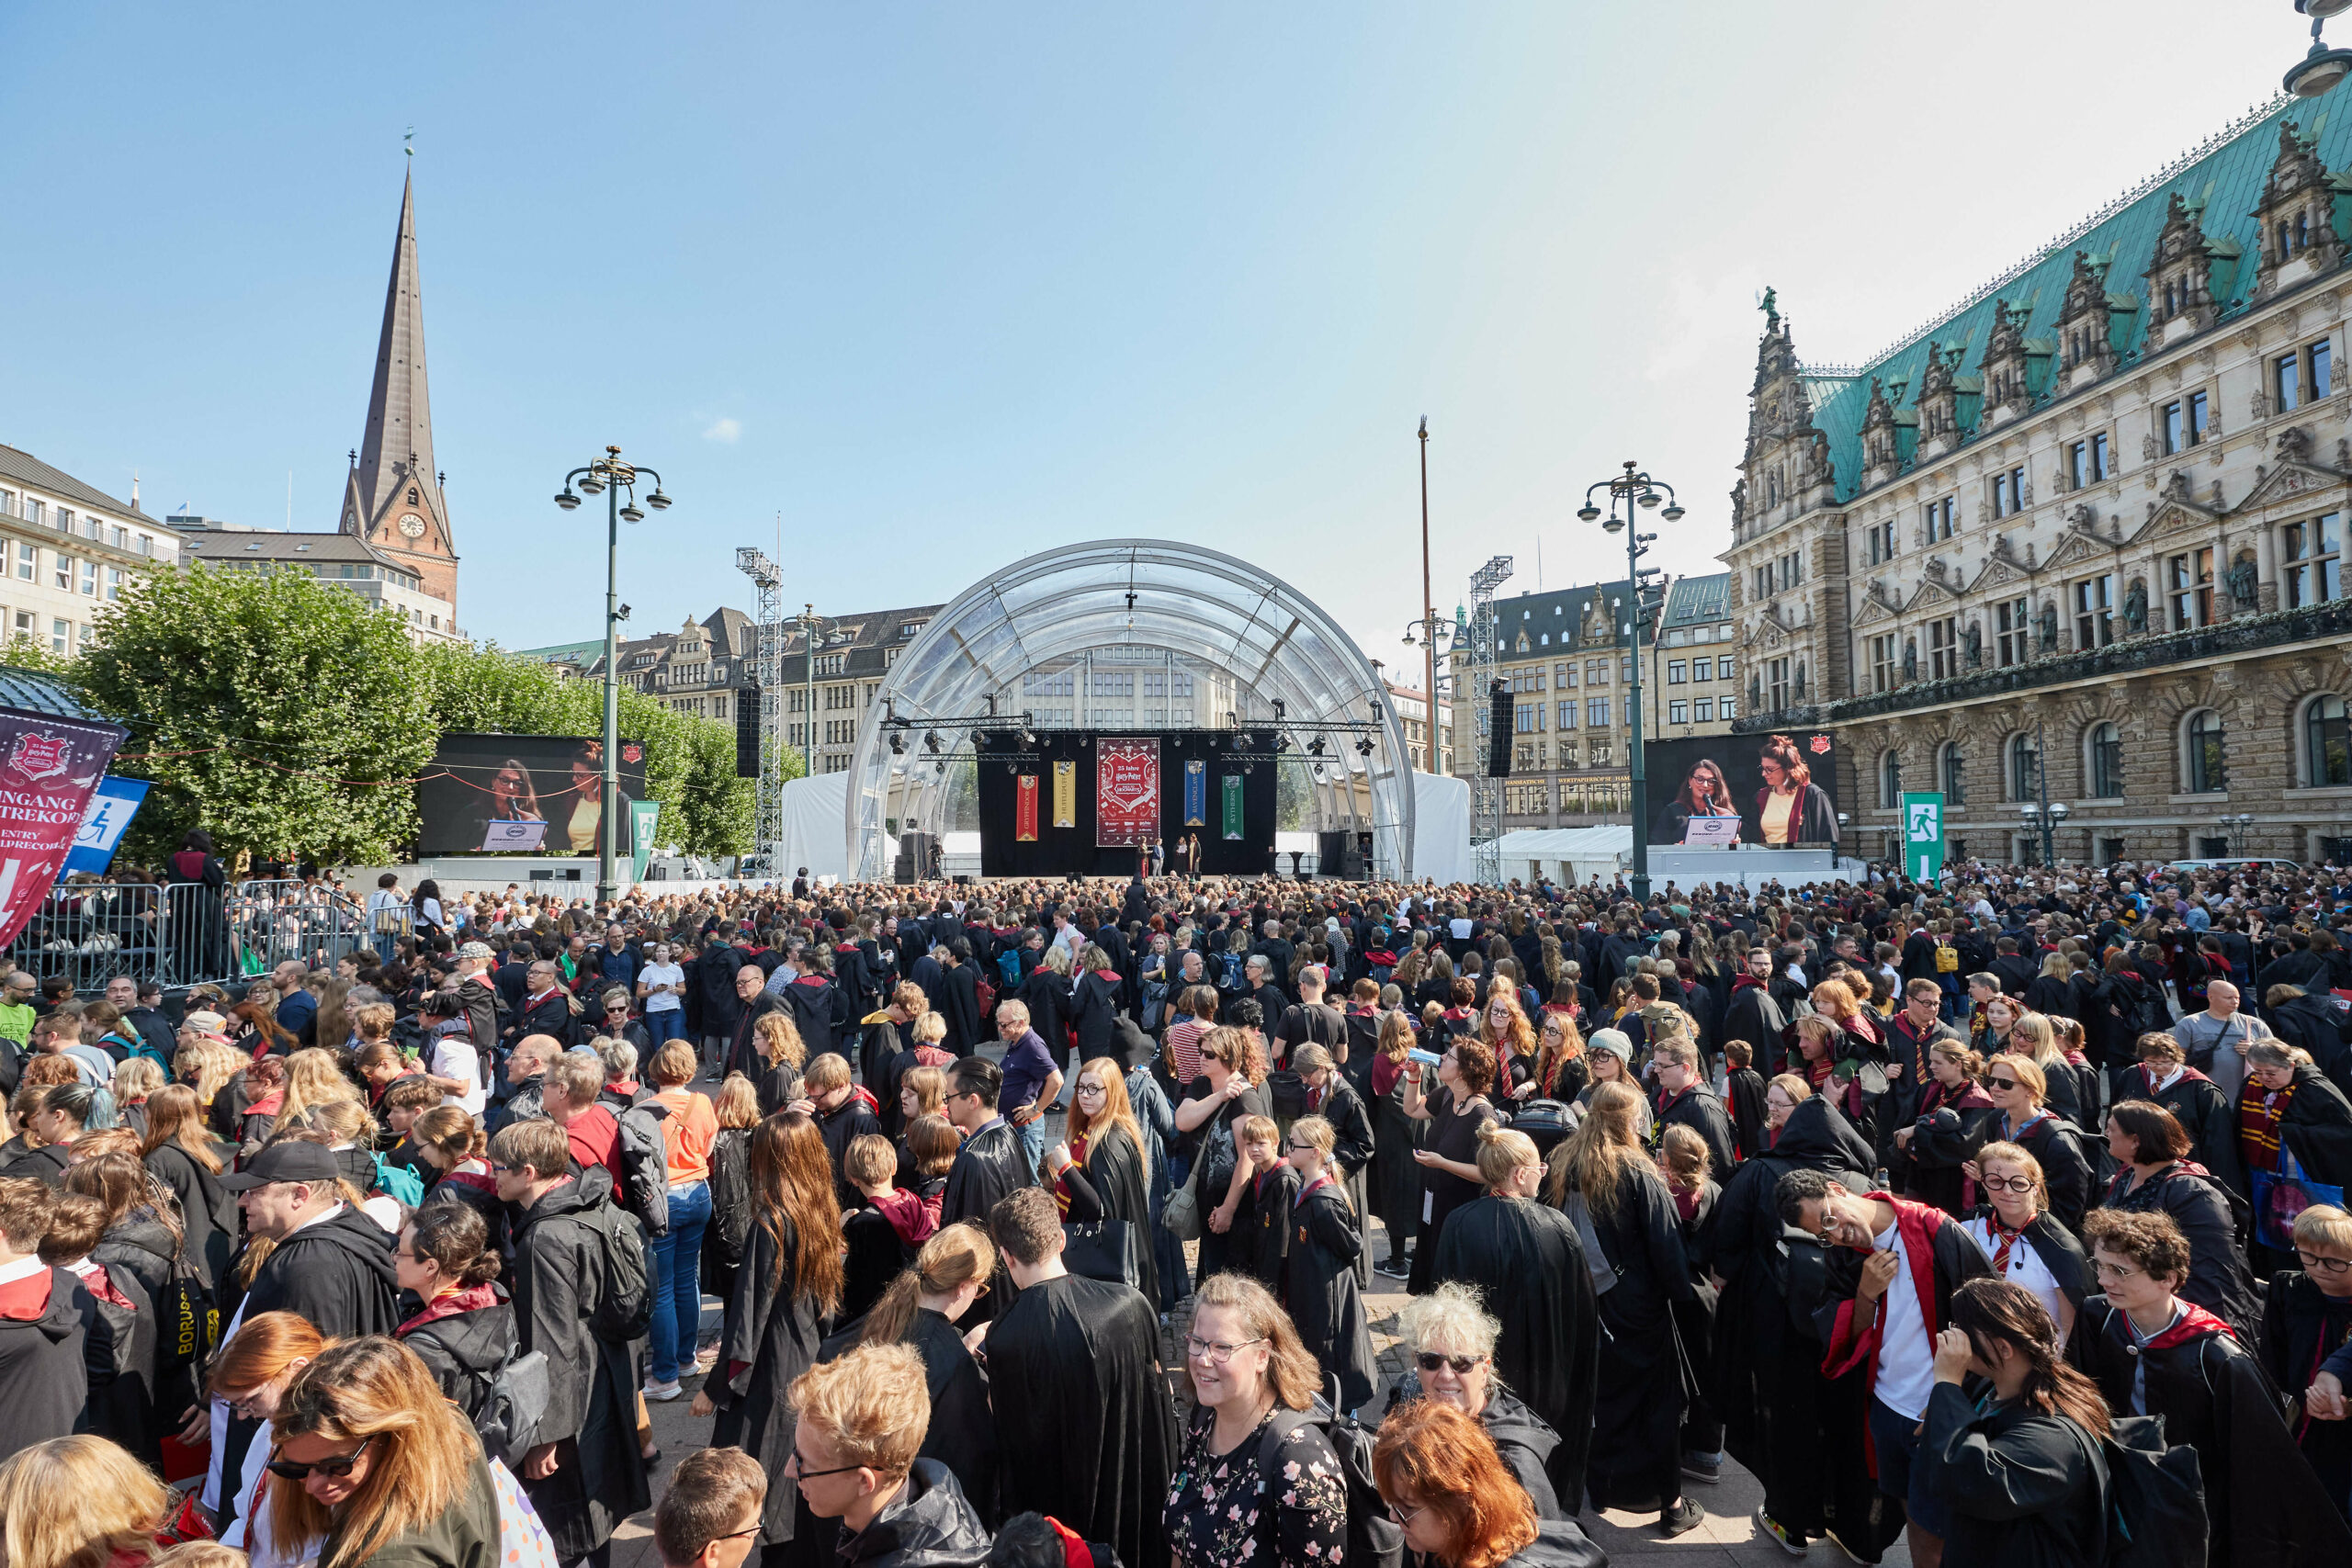 Tausende als Harry Potter verkleidete Fans strömten auf den Hamburger Rathausmarkt